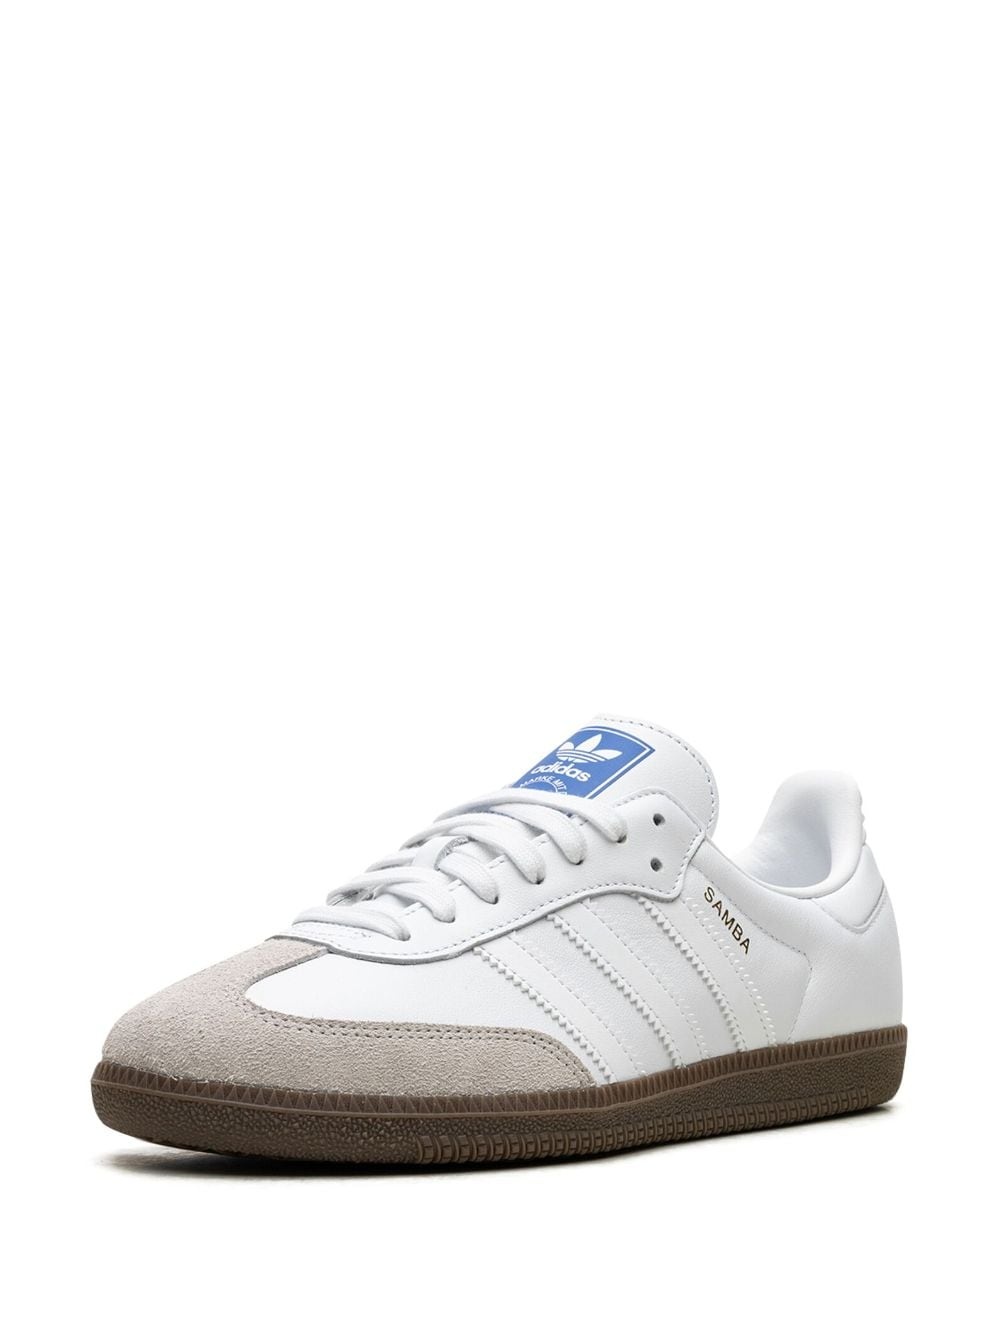 Samba OG "Double White Gum" sneakers - 4